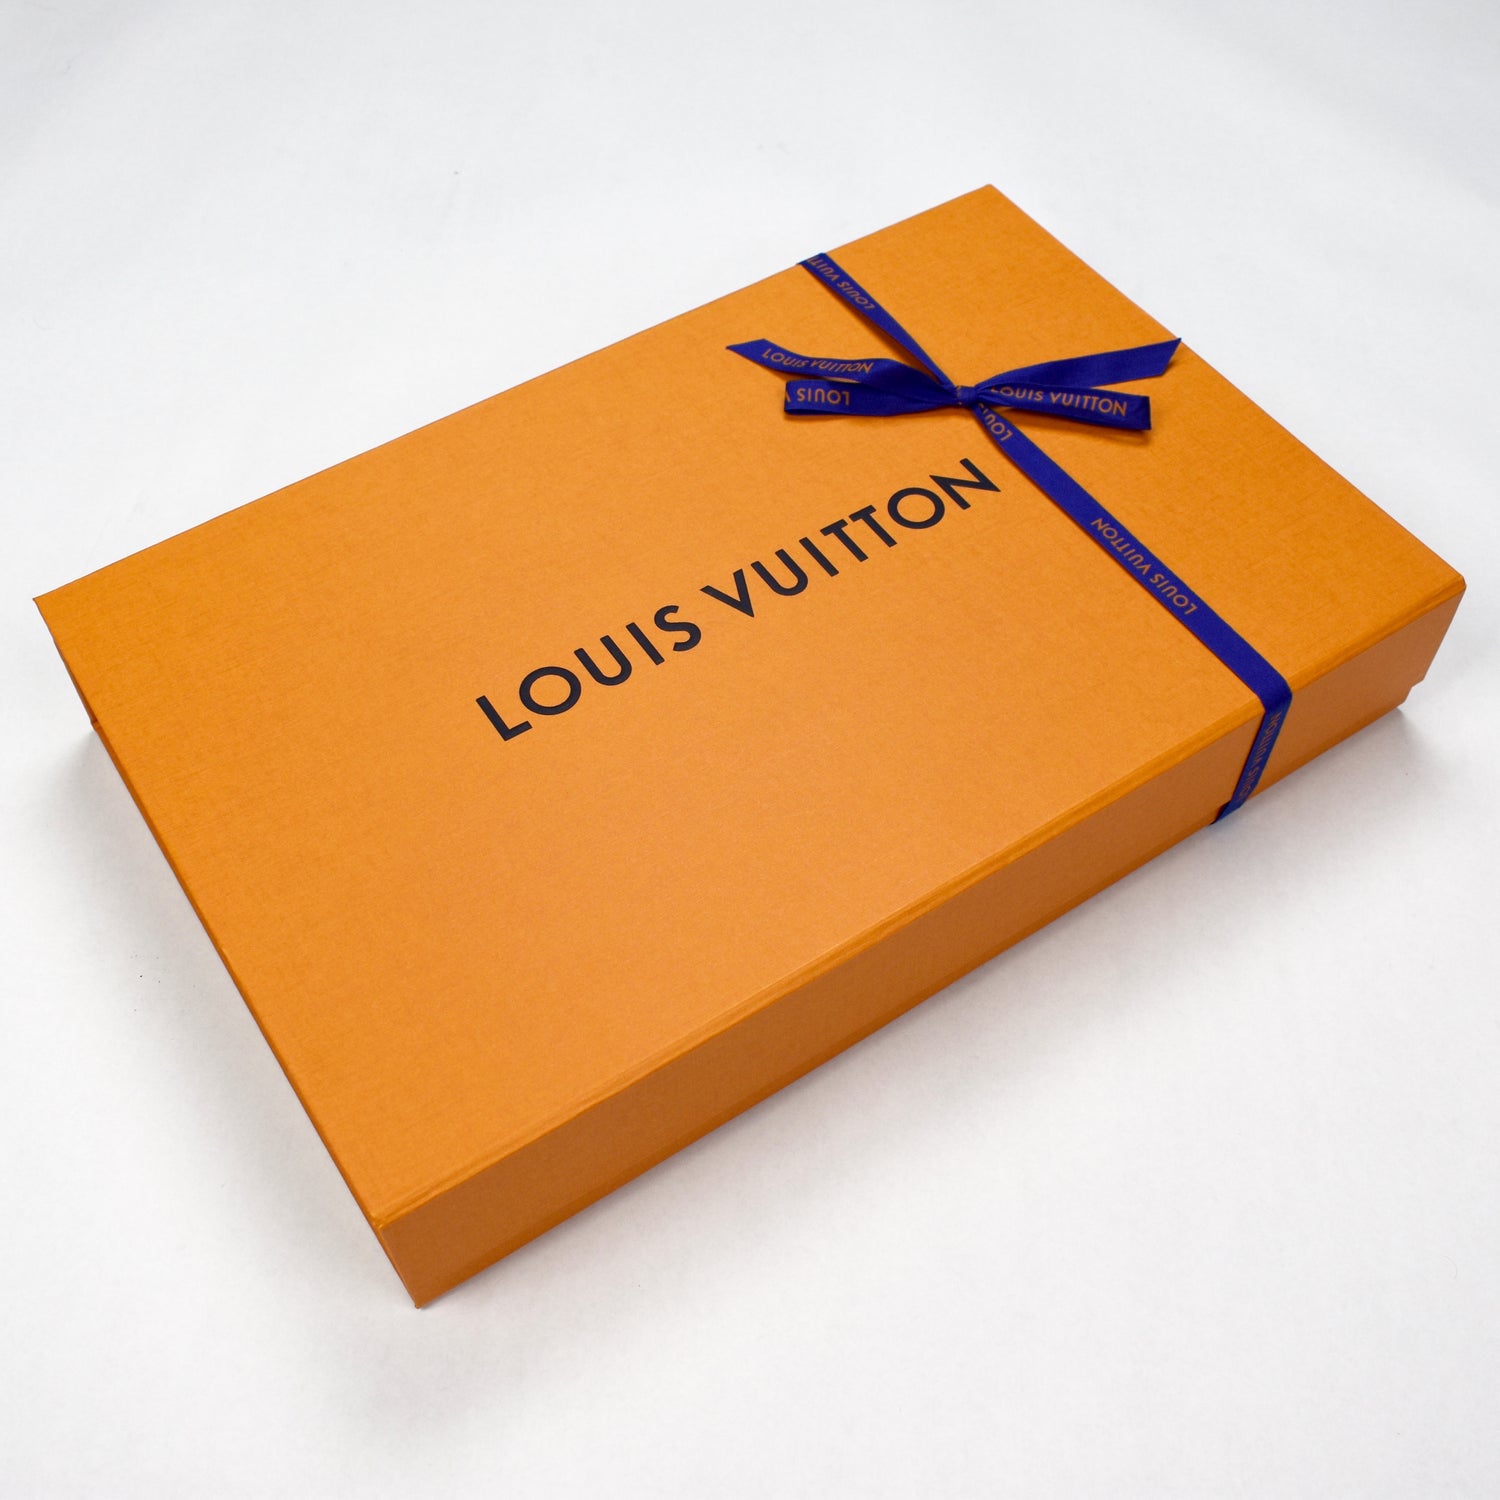 Louis Vuitton X Supreme White Box Logo Print Cotton T-Shirt S